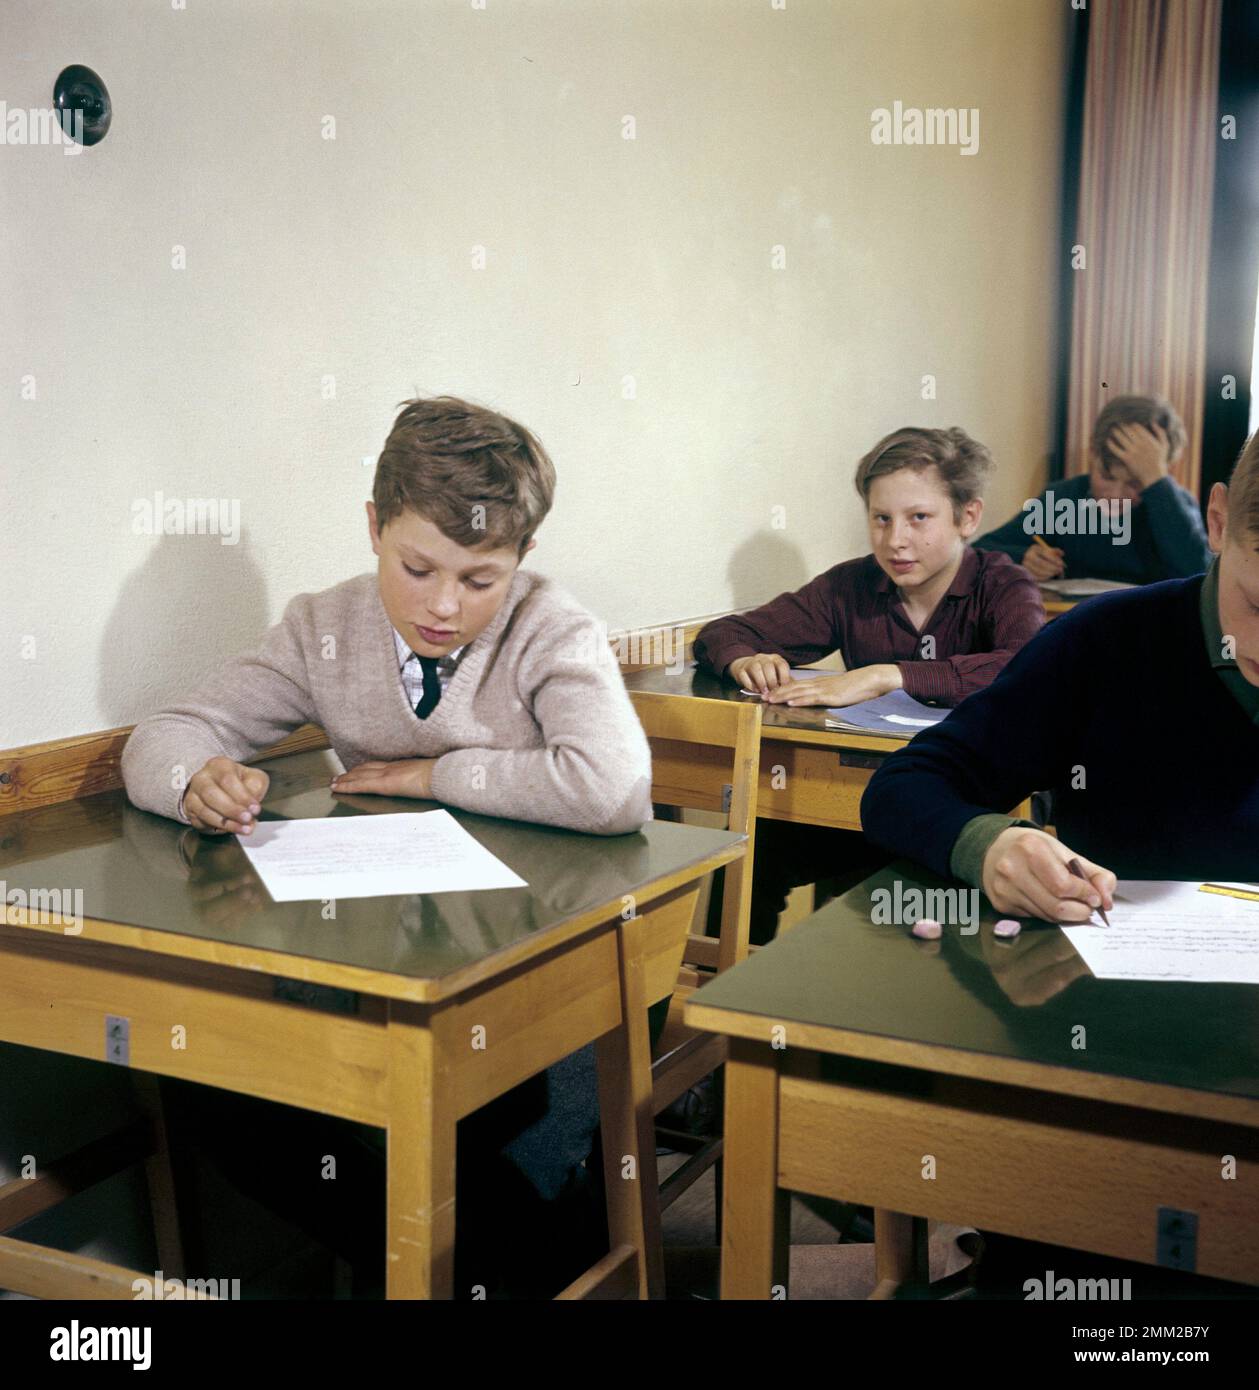 Carl XVI Gustaf, re di Svezia. Nato il 30 aprile 1946. Nella foto, l'età di 14 anni è quella di un ragazzo della scuola privata Sigtuna humanistiska läroverk 1960. rif 2-40-6 Foto Stock